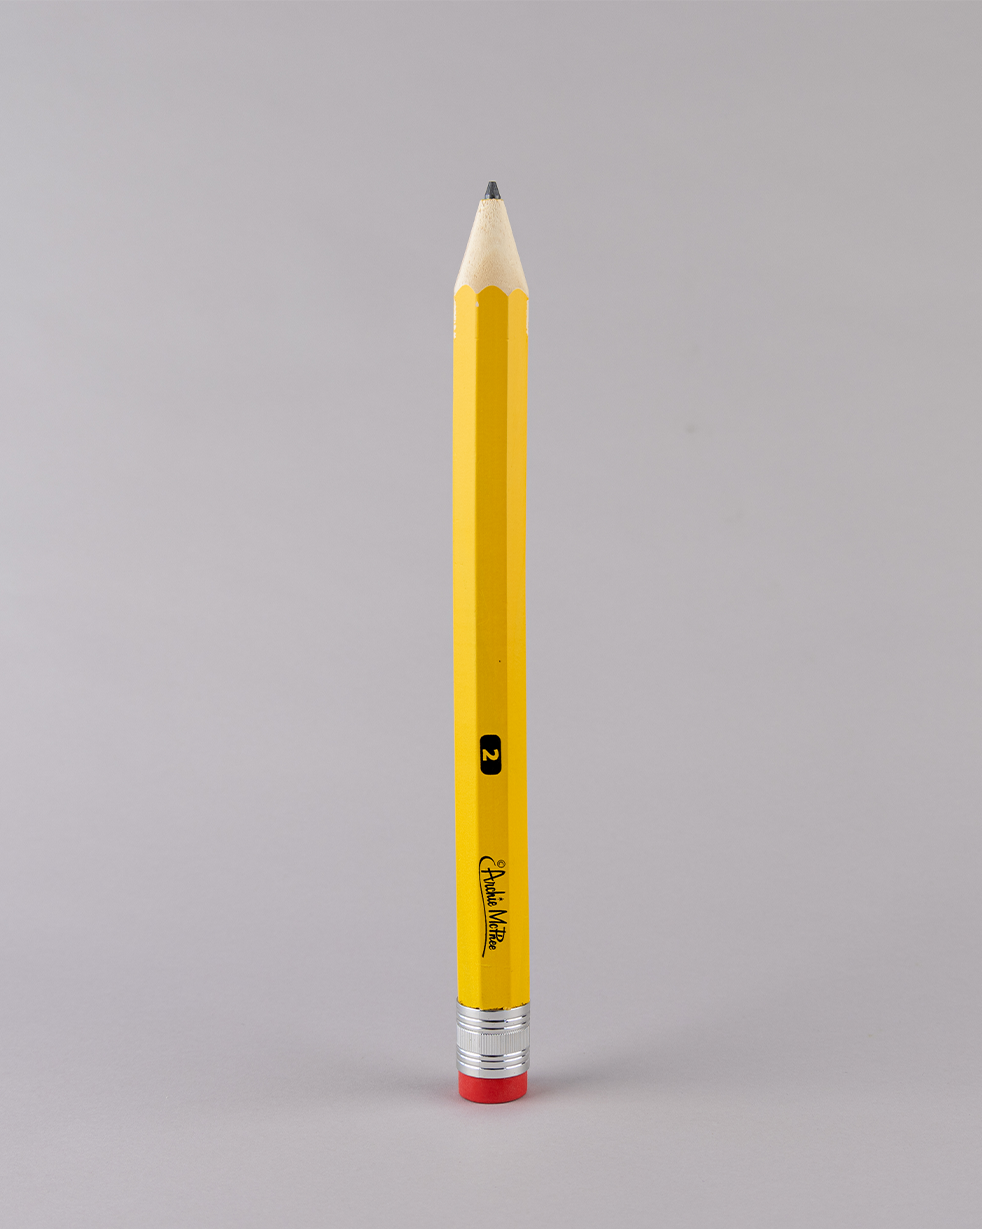 Wysox, PA - Giant Pencil